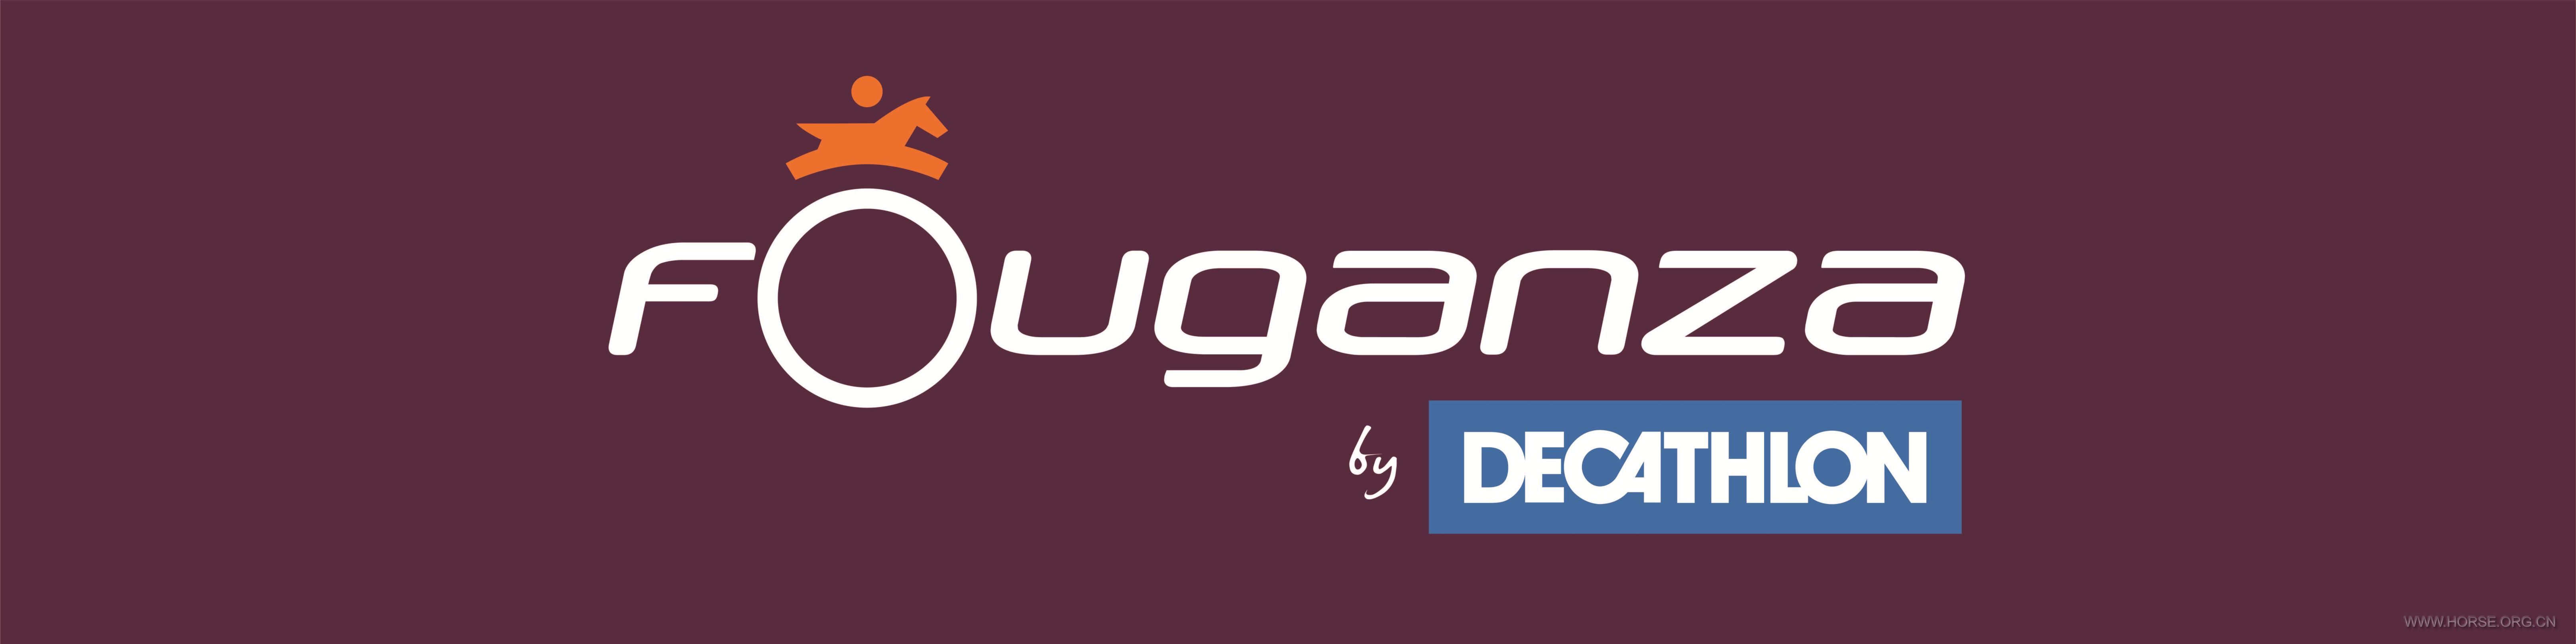 Bache Fouganza logo by Decathlon.jpg